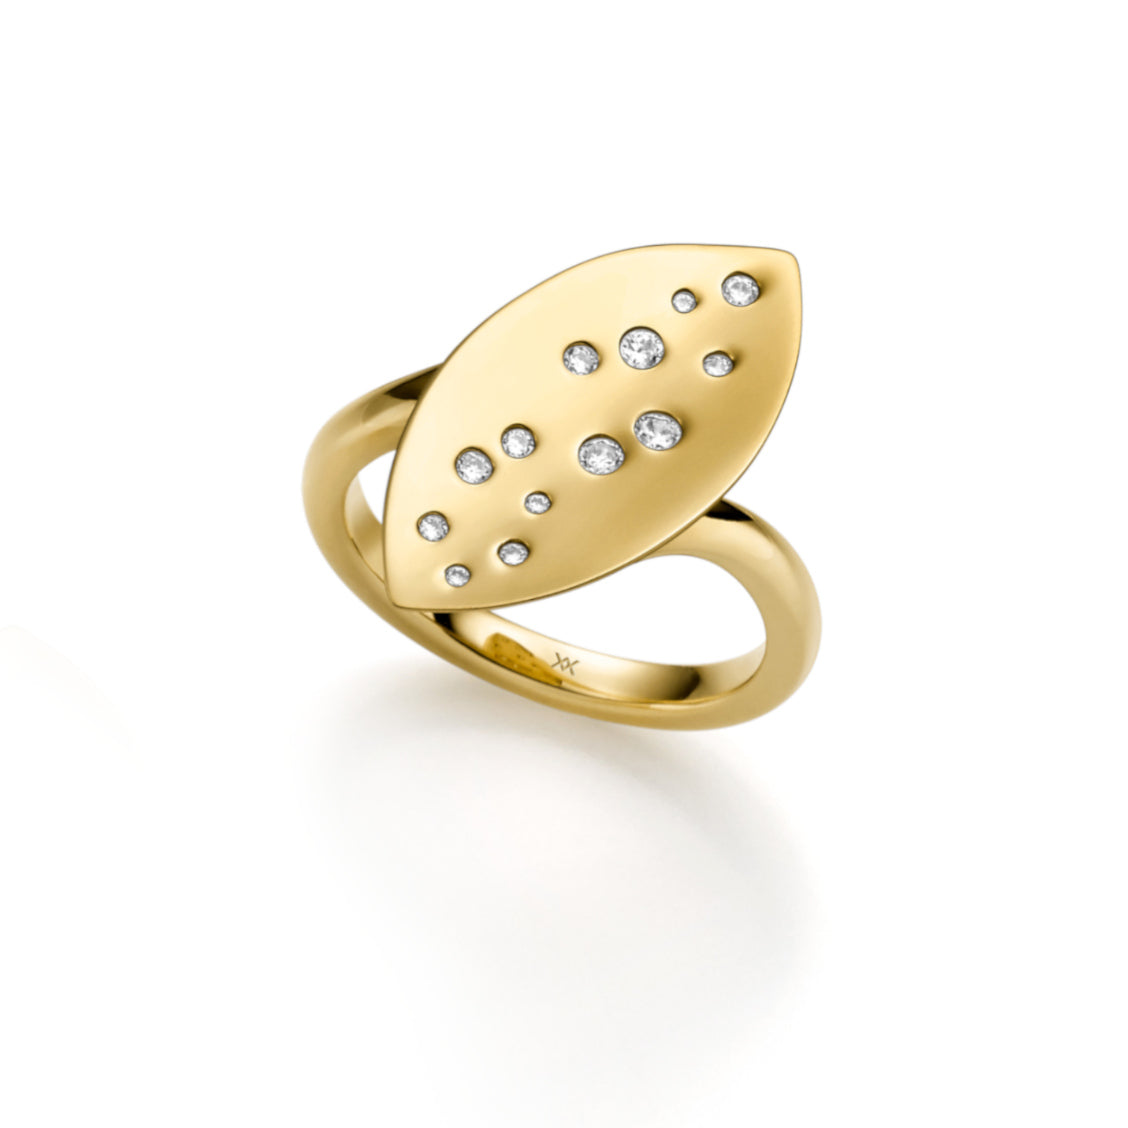 WILHELM MÜLLER - Ring in Silber mit ovalen Goldelementen und Zirkonia